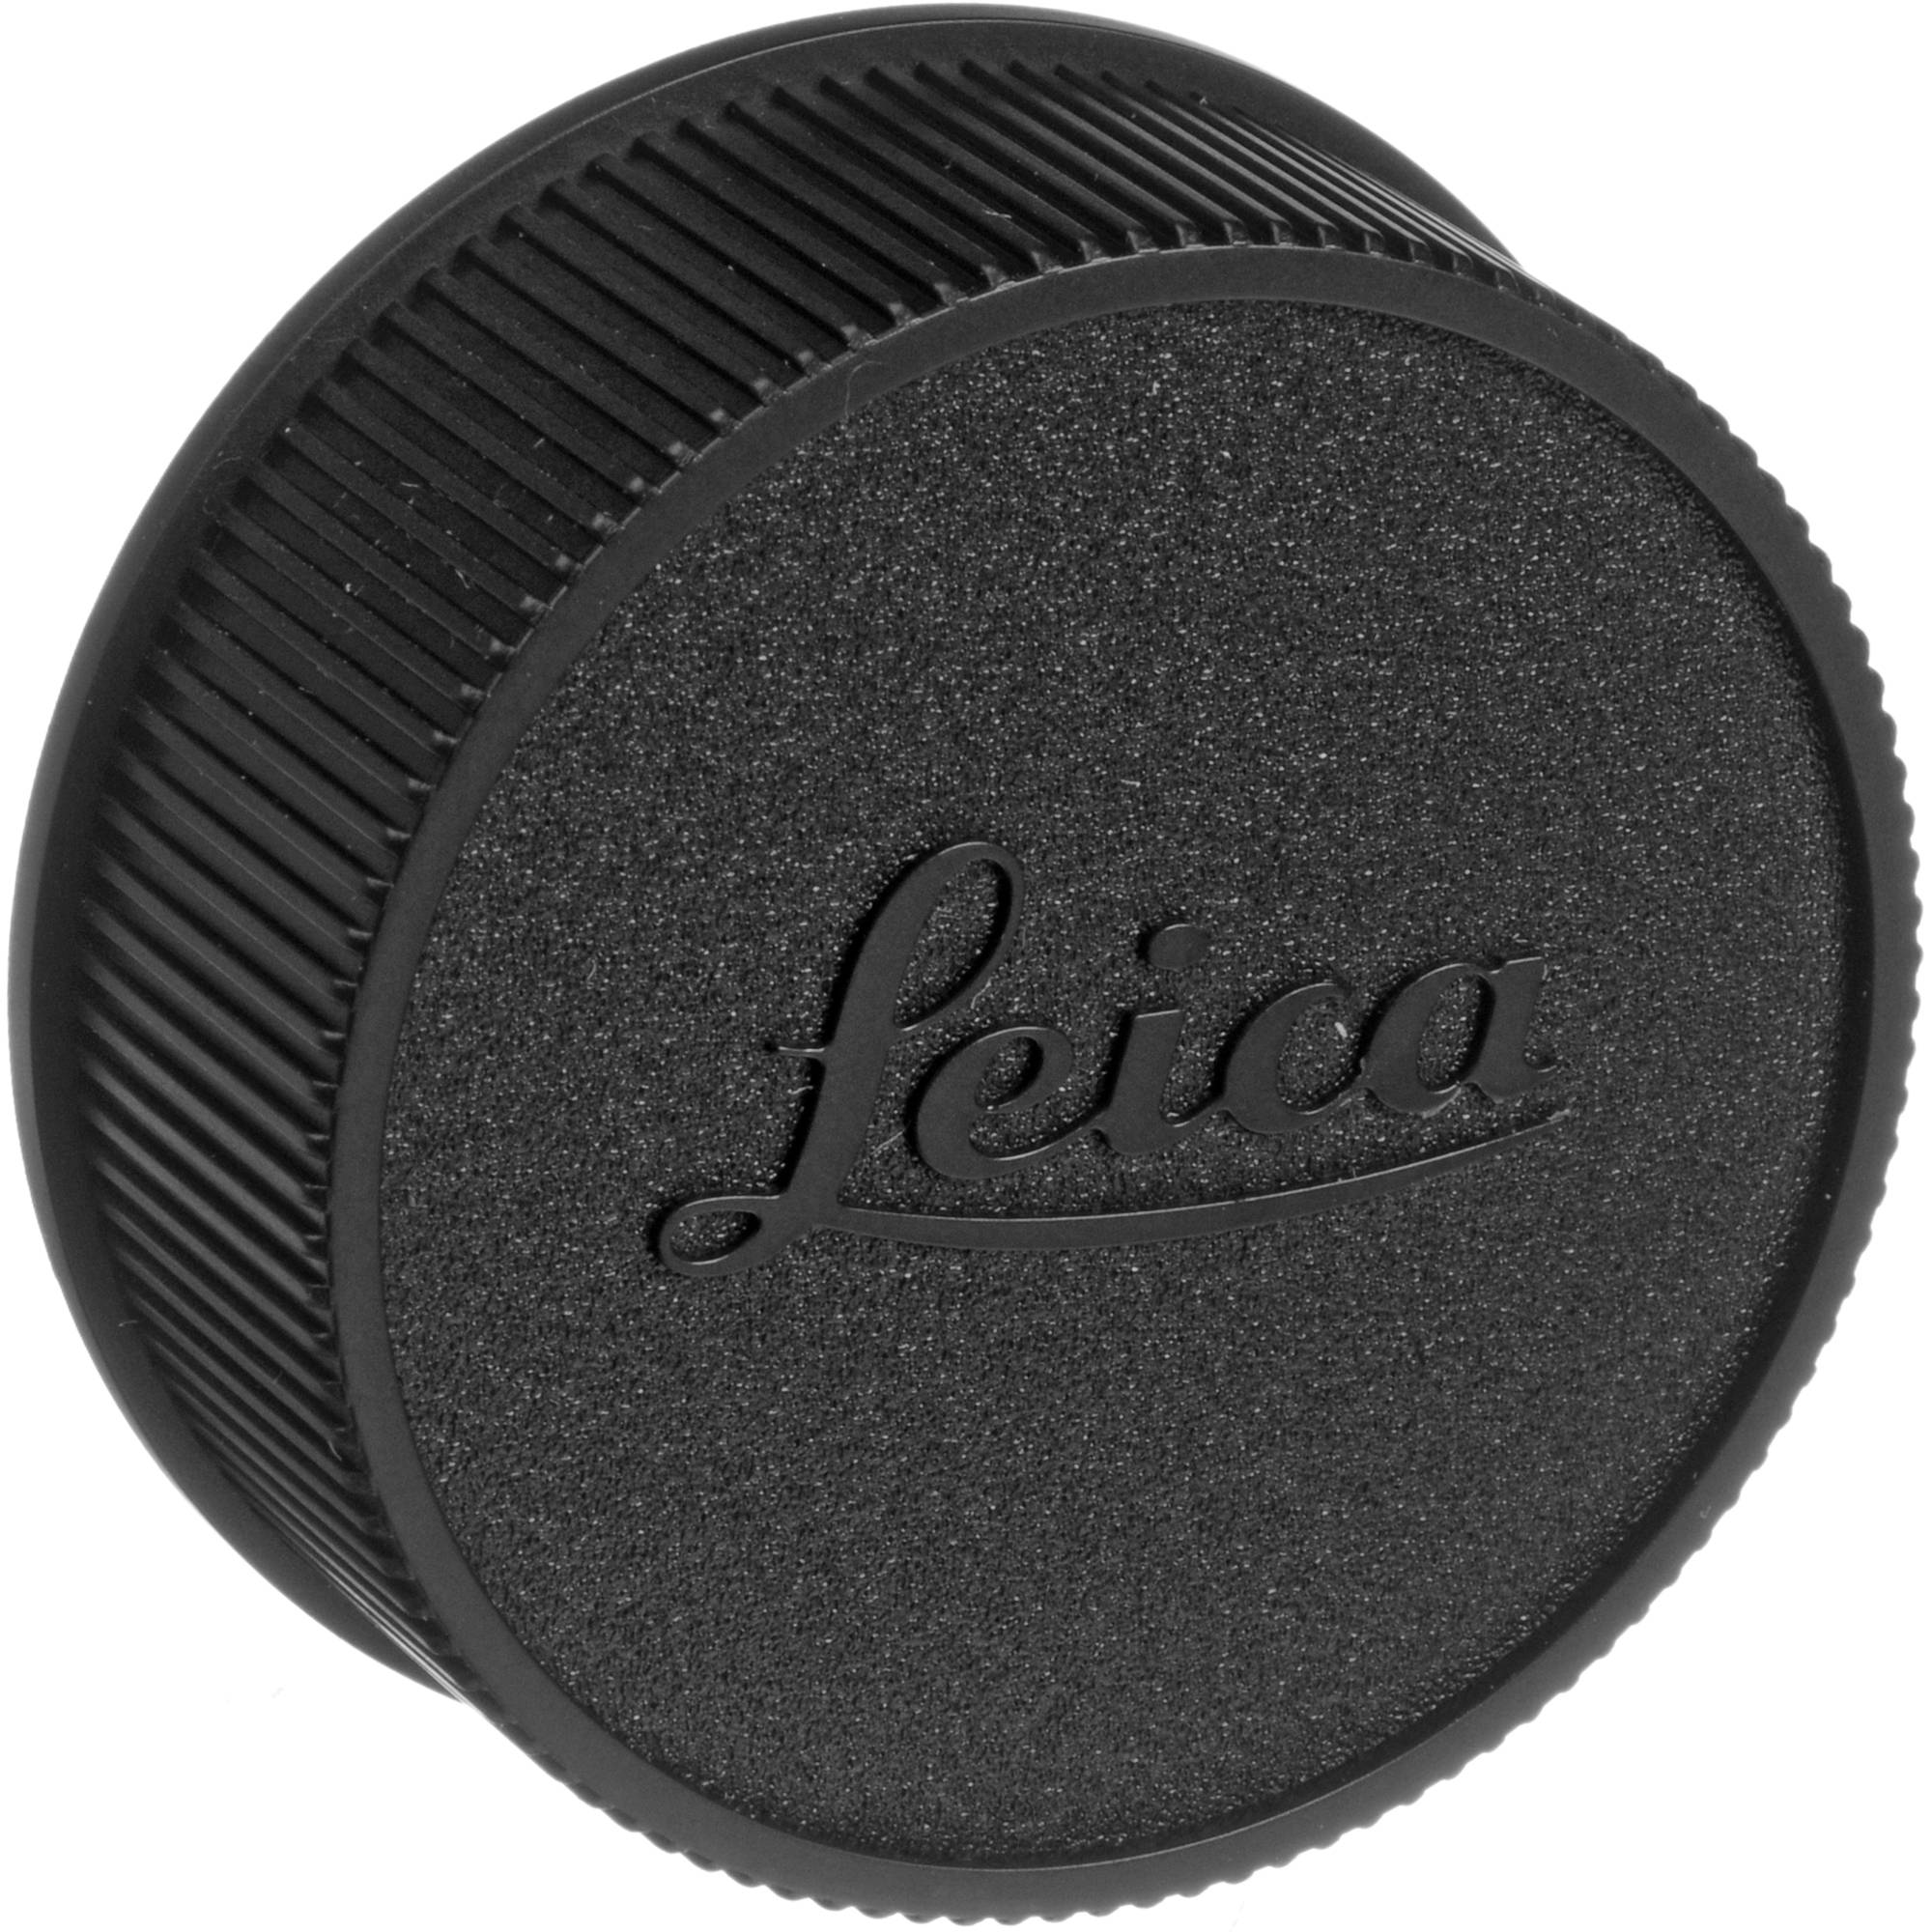 Leica Rear Lens Cap M